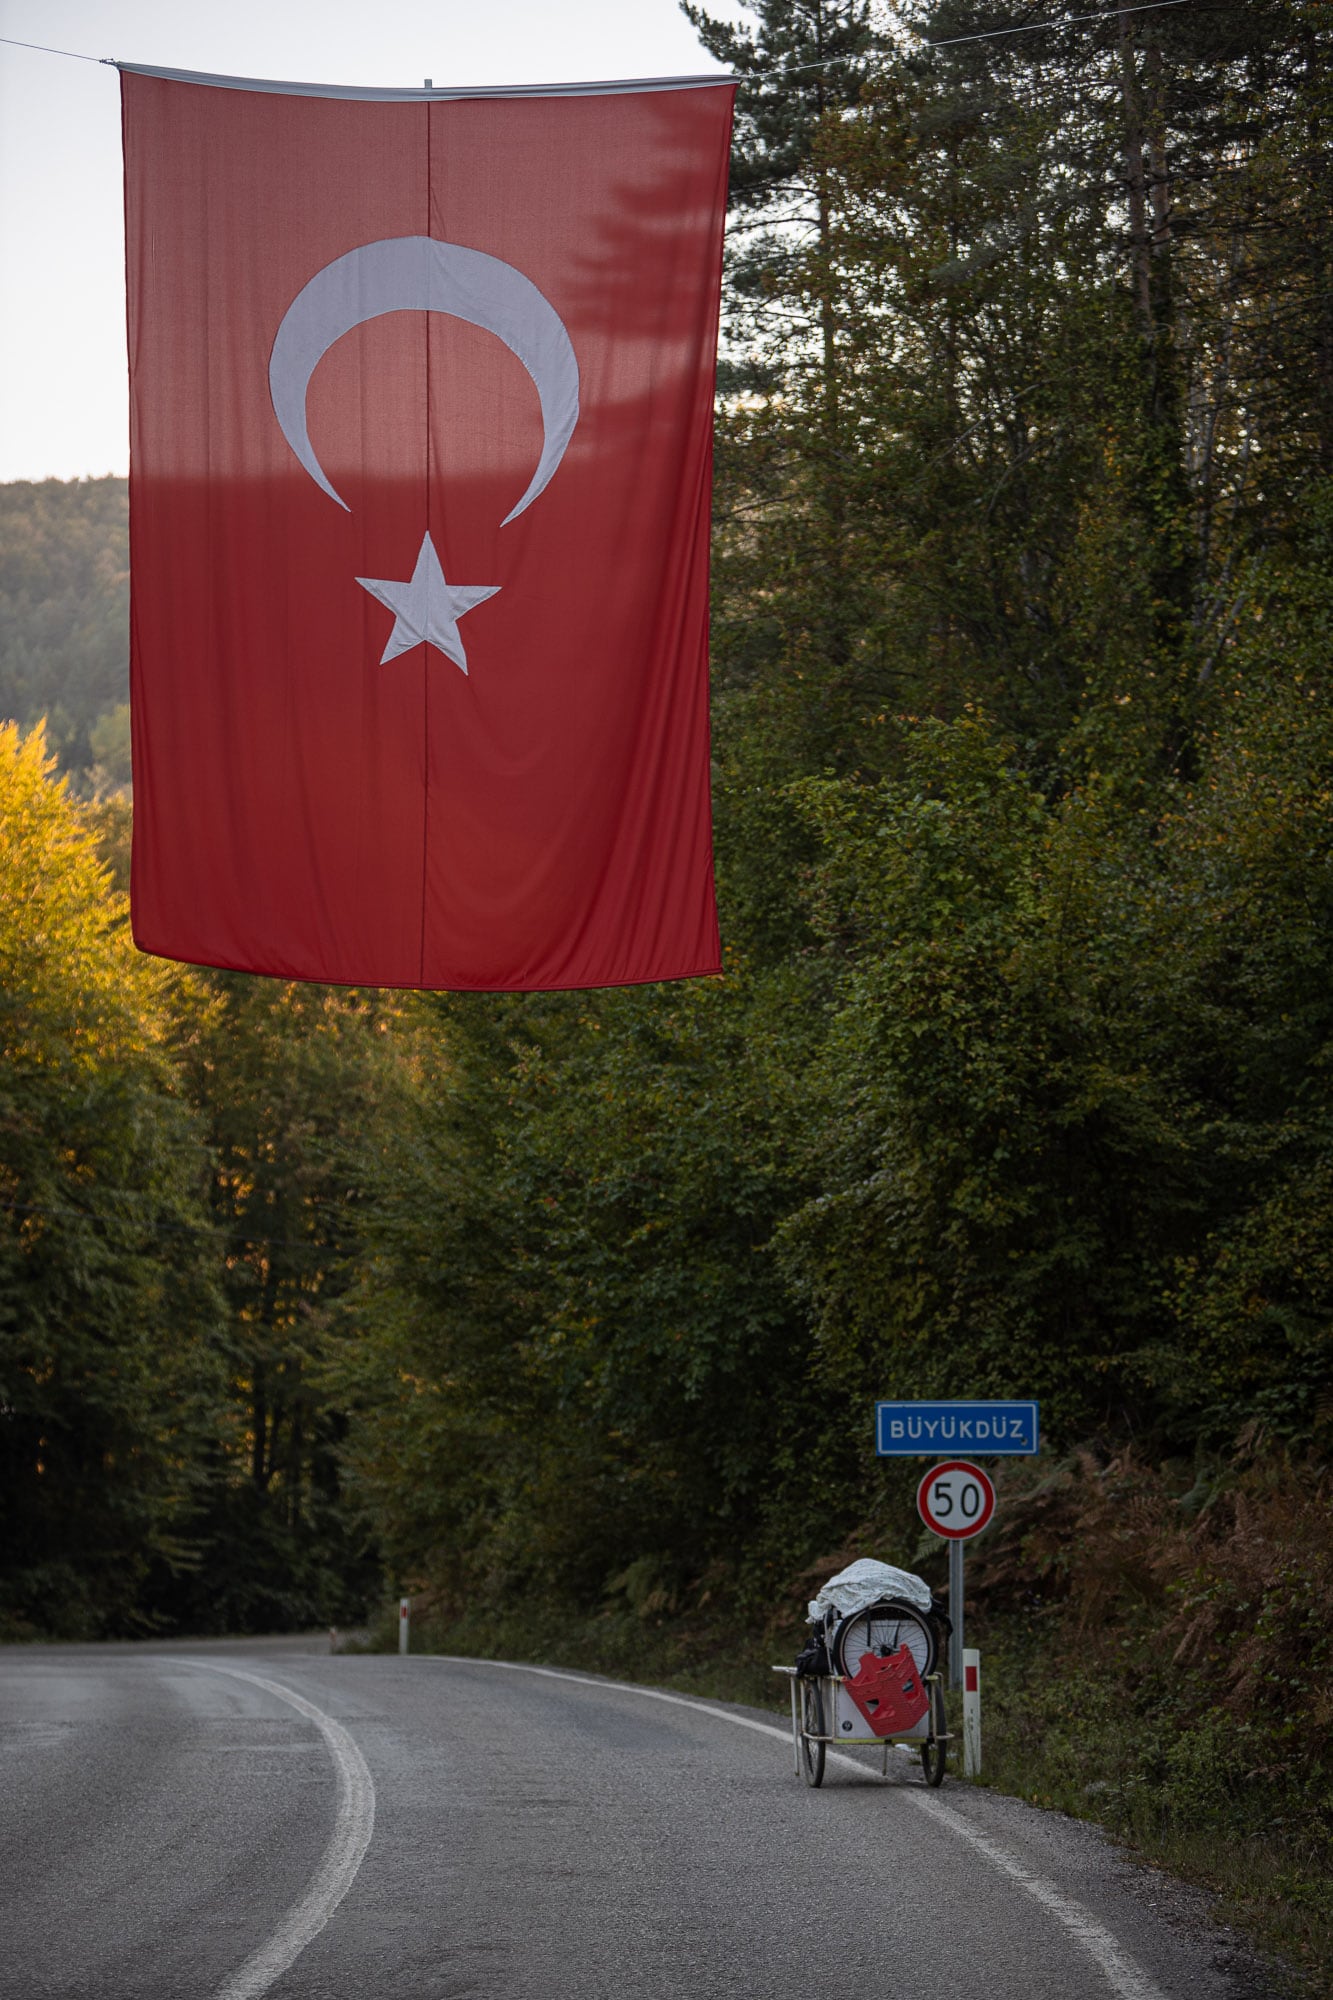 Turkish flag in Büyükdüz